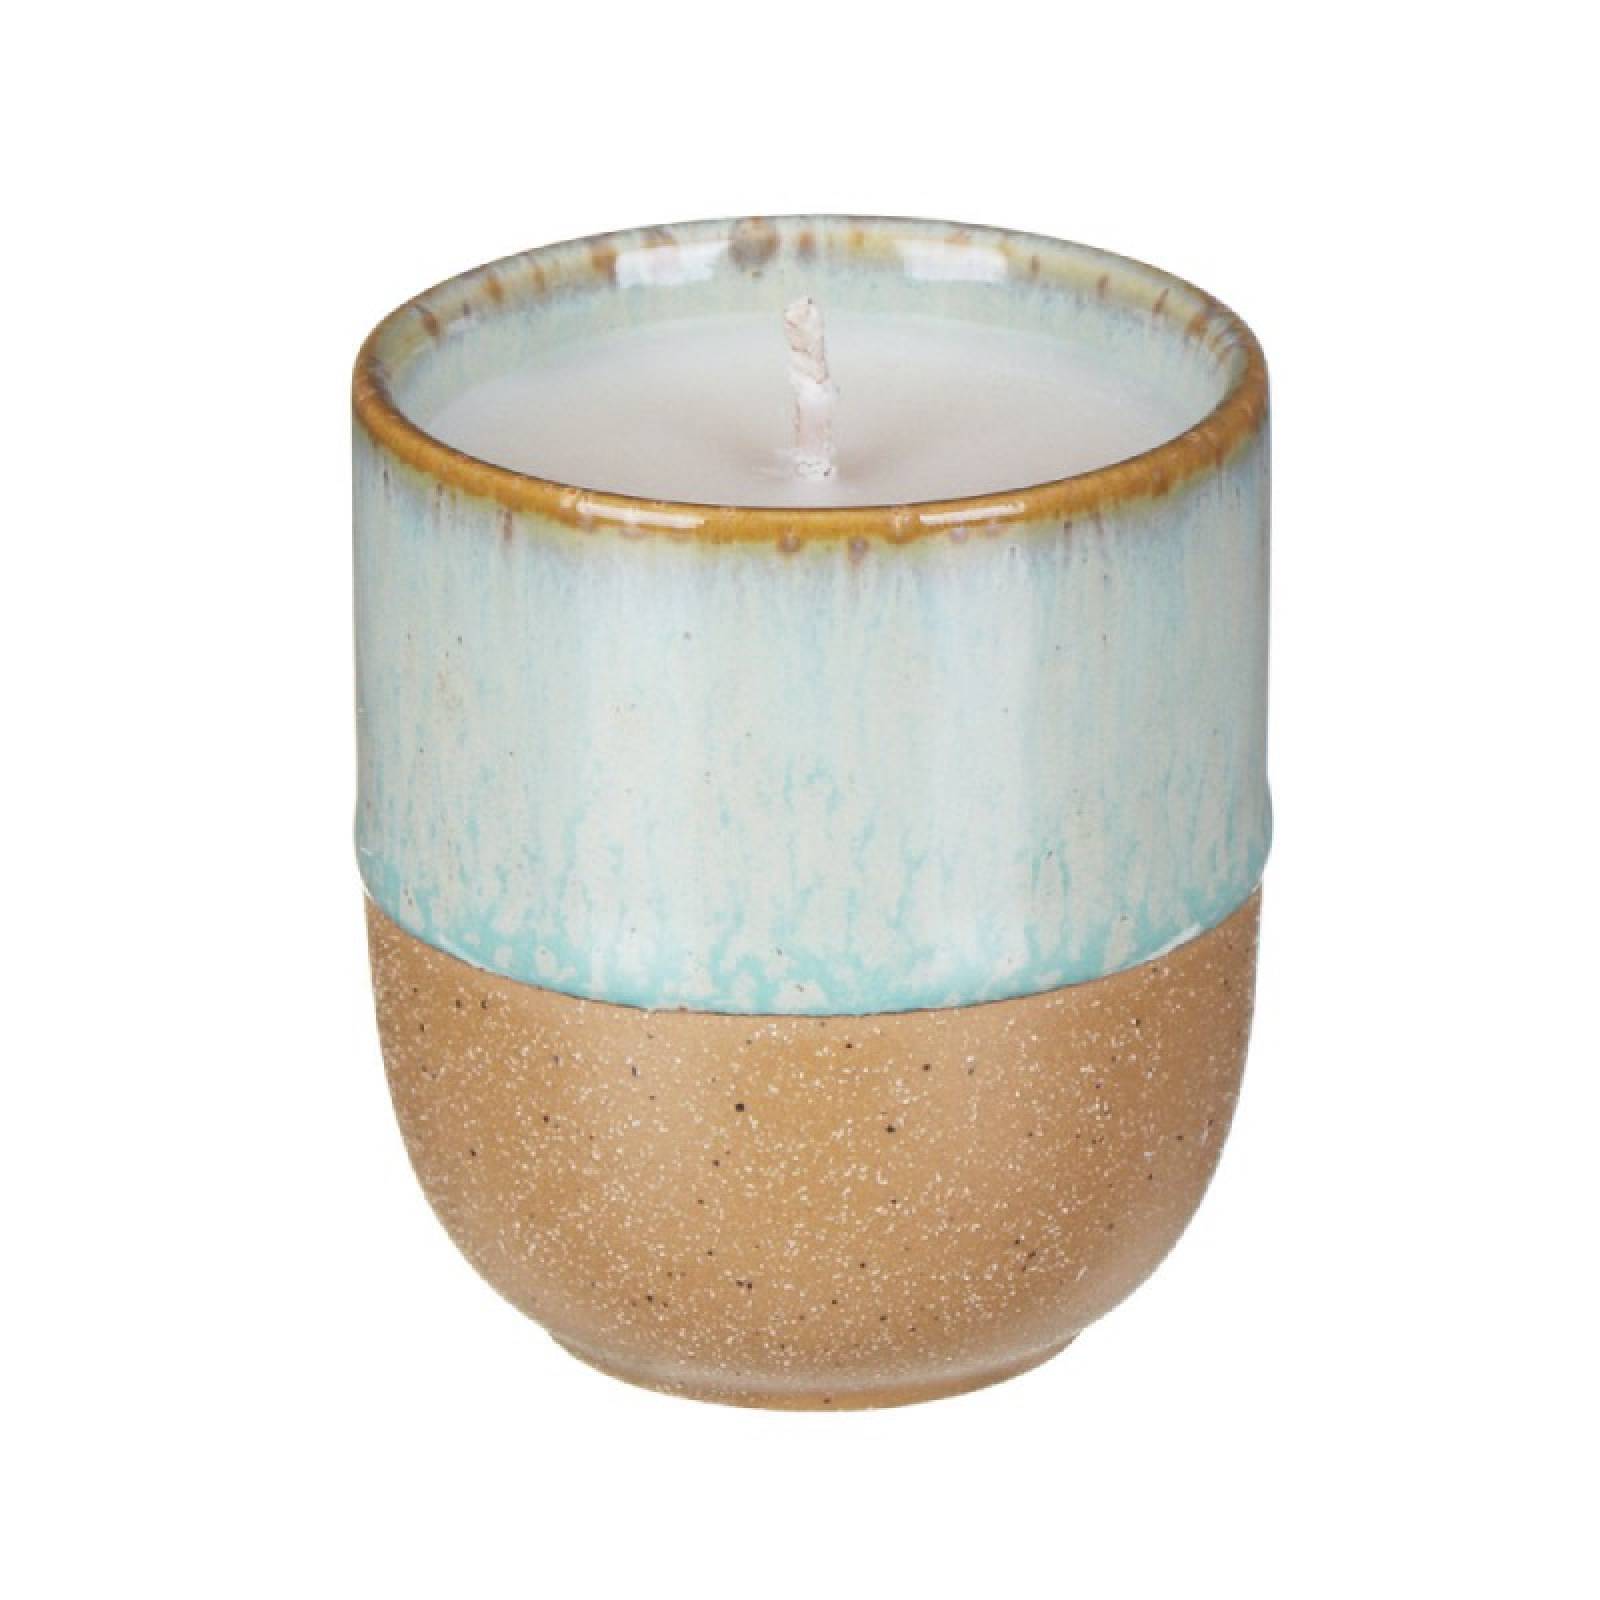 Glazed Ceramic Pot With Soy Candle - Matcha Tea & Bergamot 99g